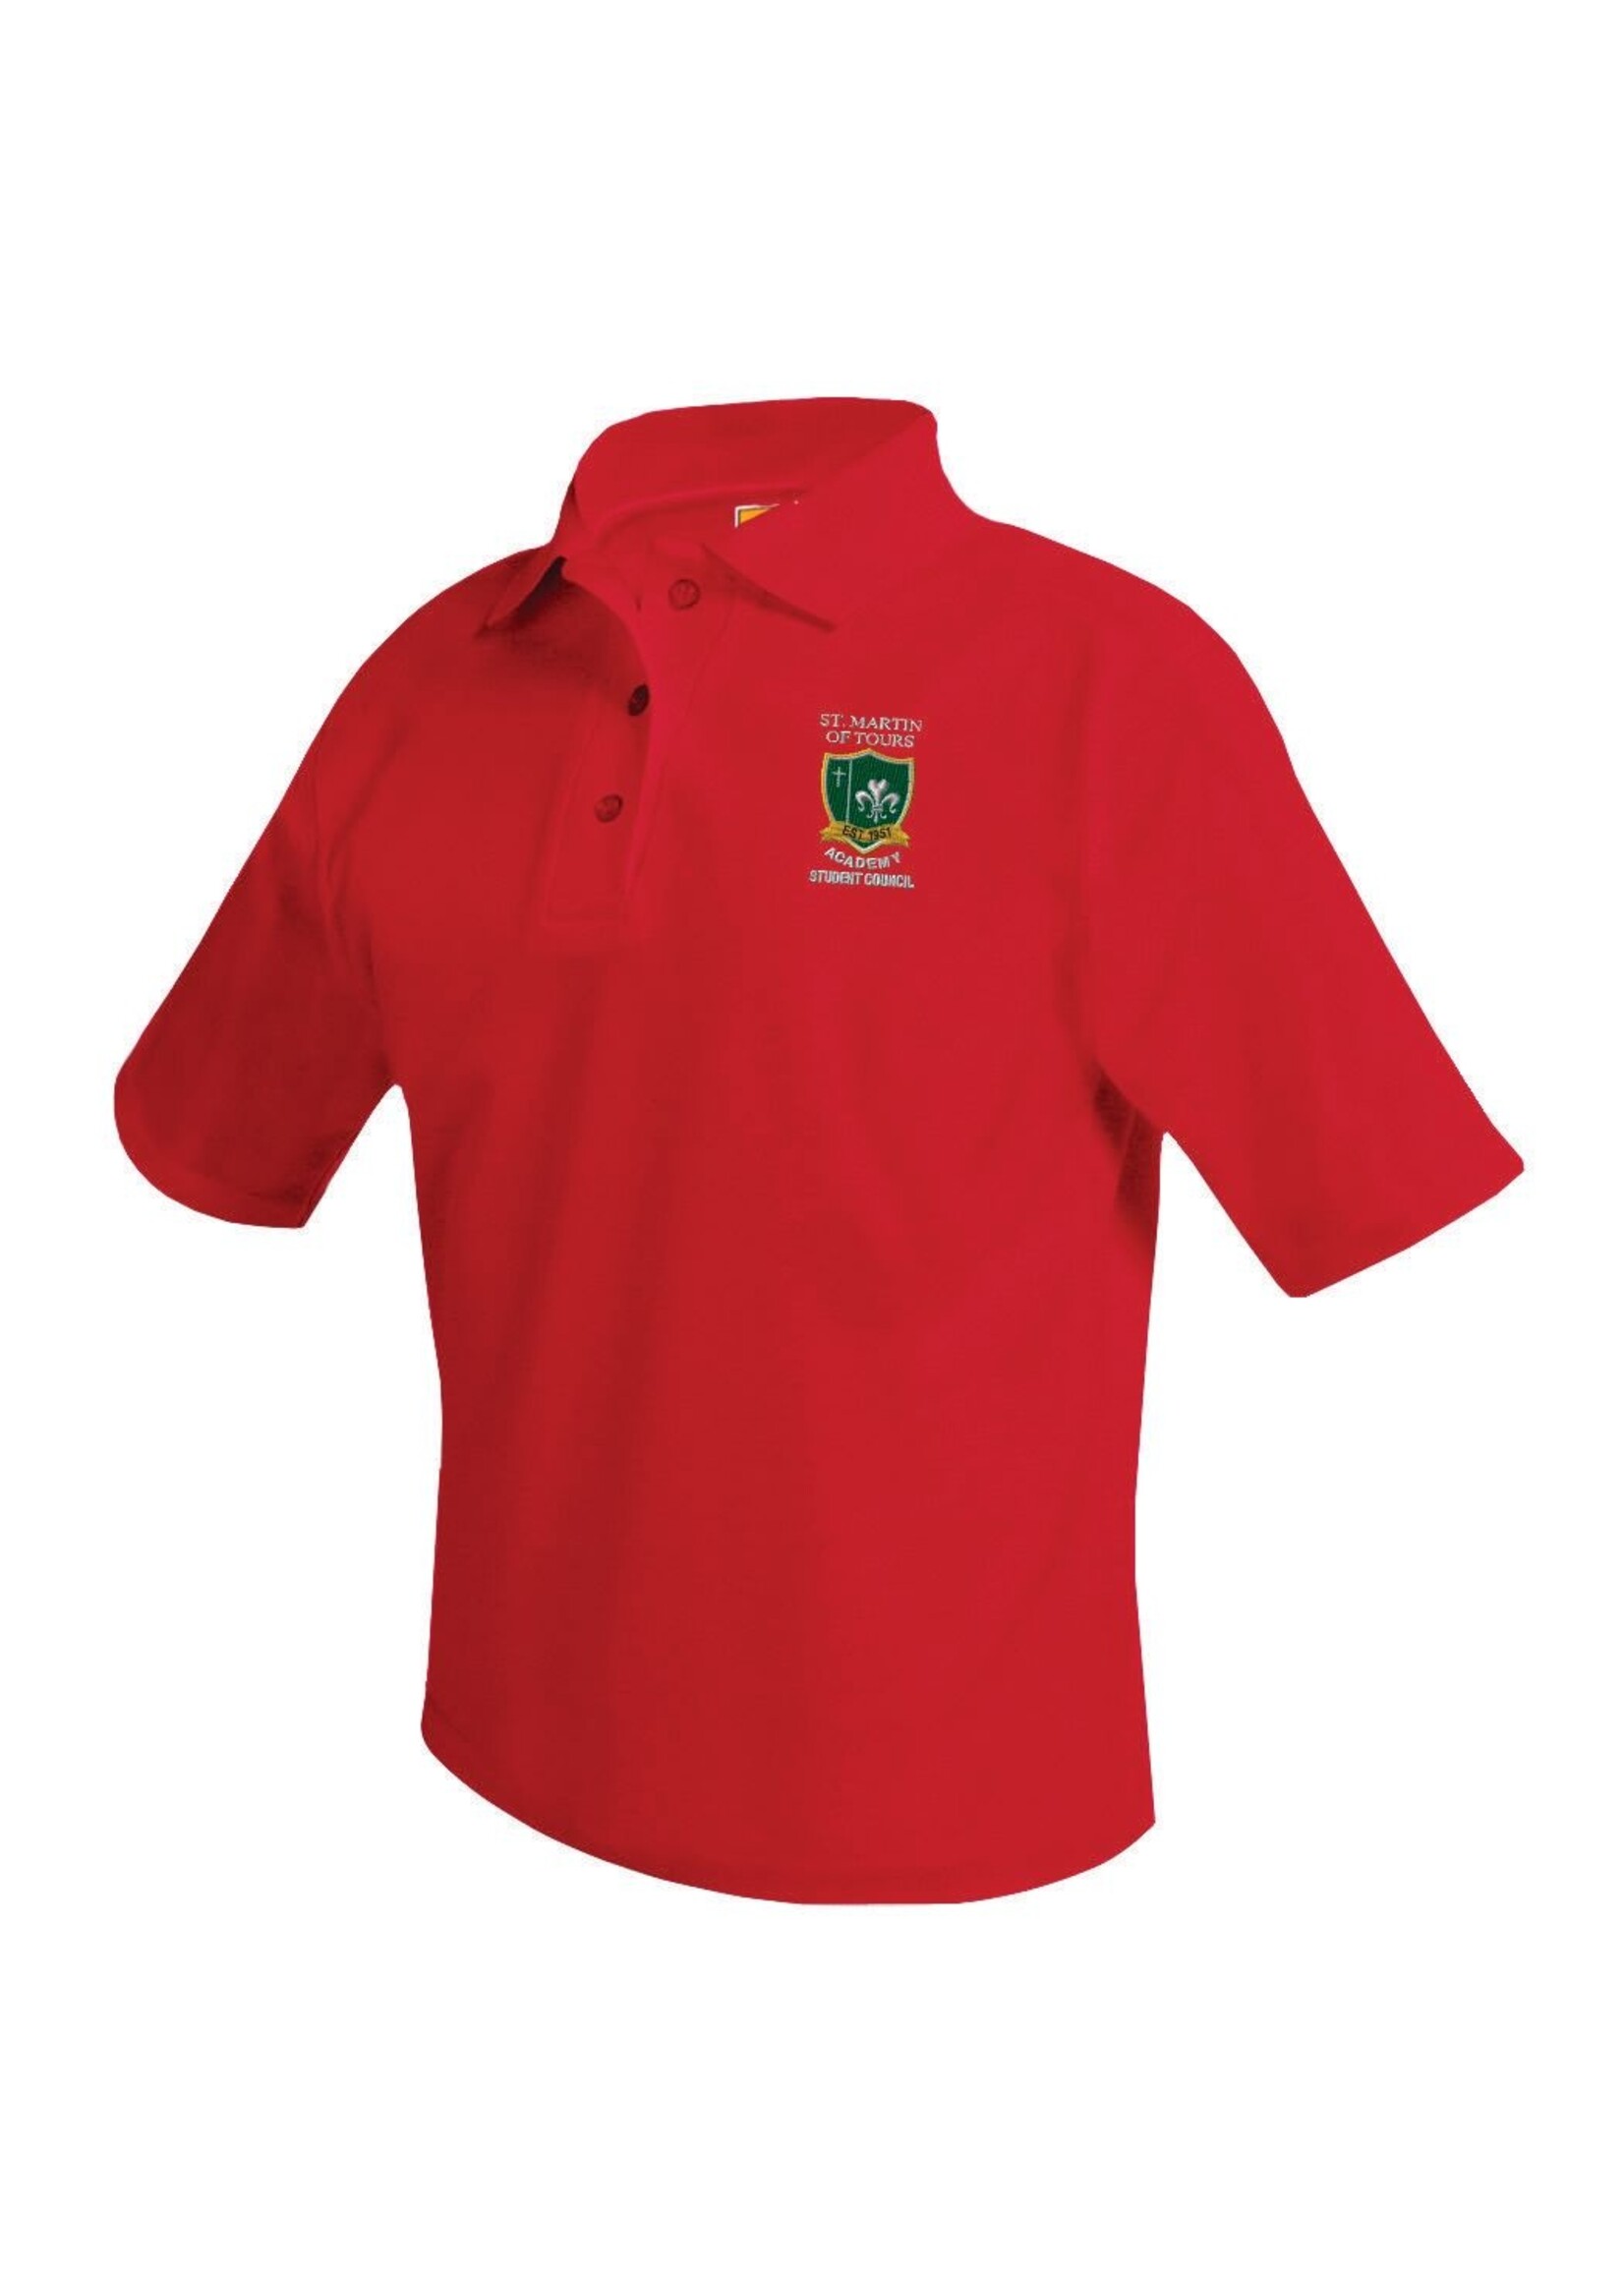 SMTA  Red Student Council Pique Polo Shirt